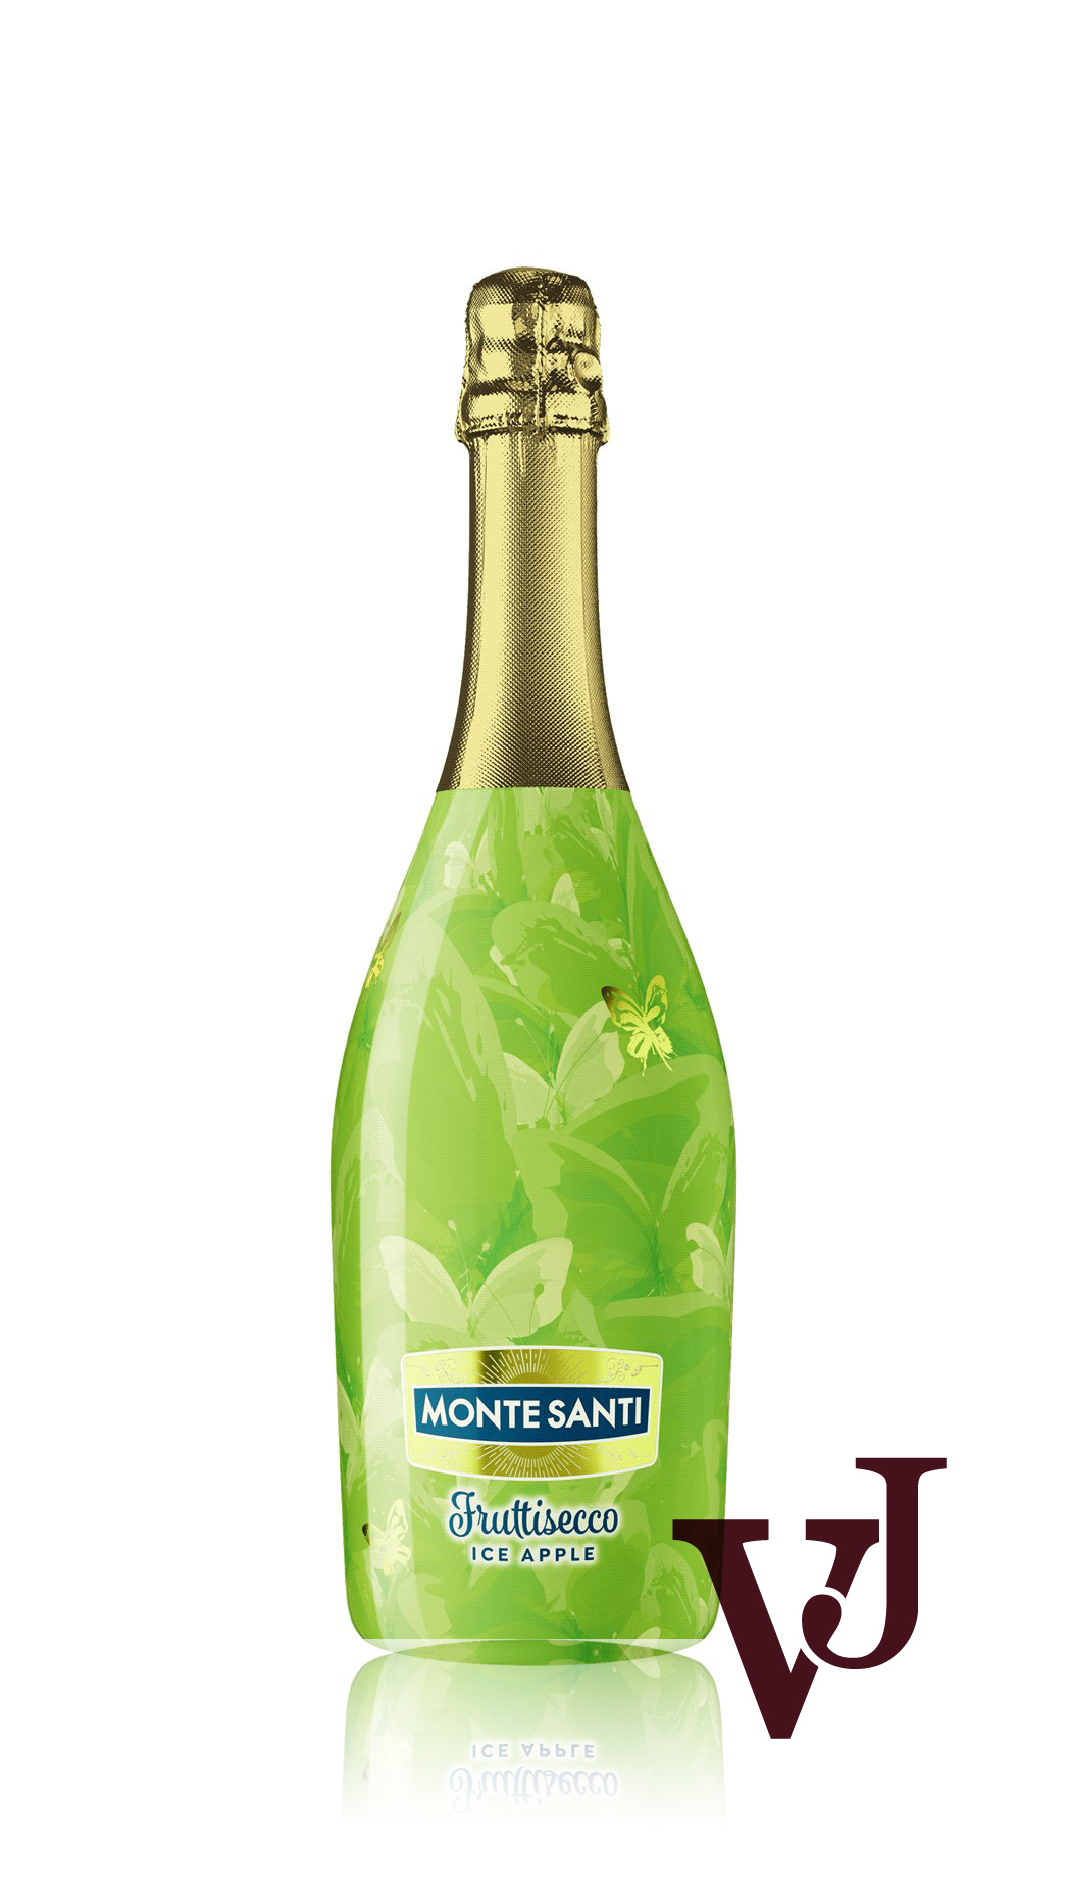 Övrigt vin - Monte Santi Fruttisecco Ice Apple artikel nummer 7403301 från producenten JNT Group S.A Sp.K från området Varumärketärinternationellt